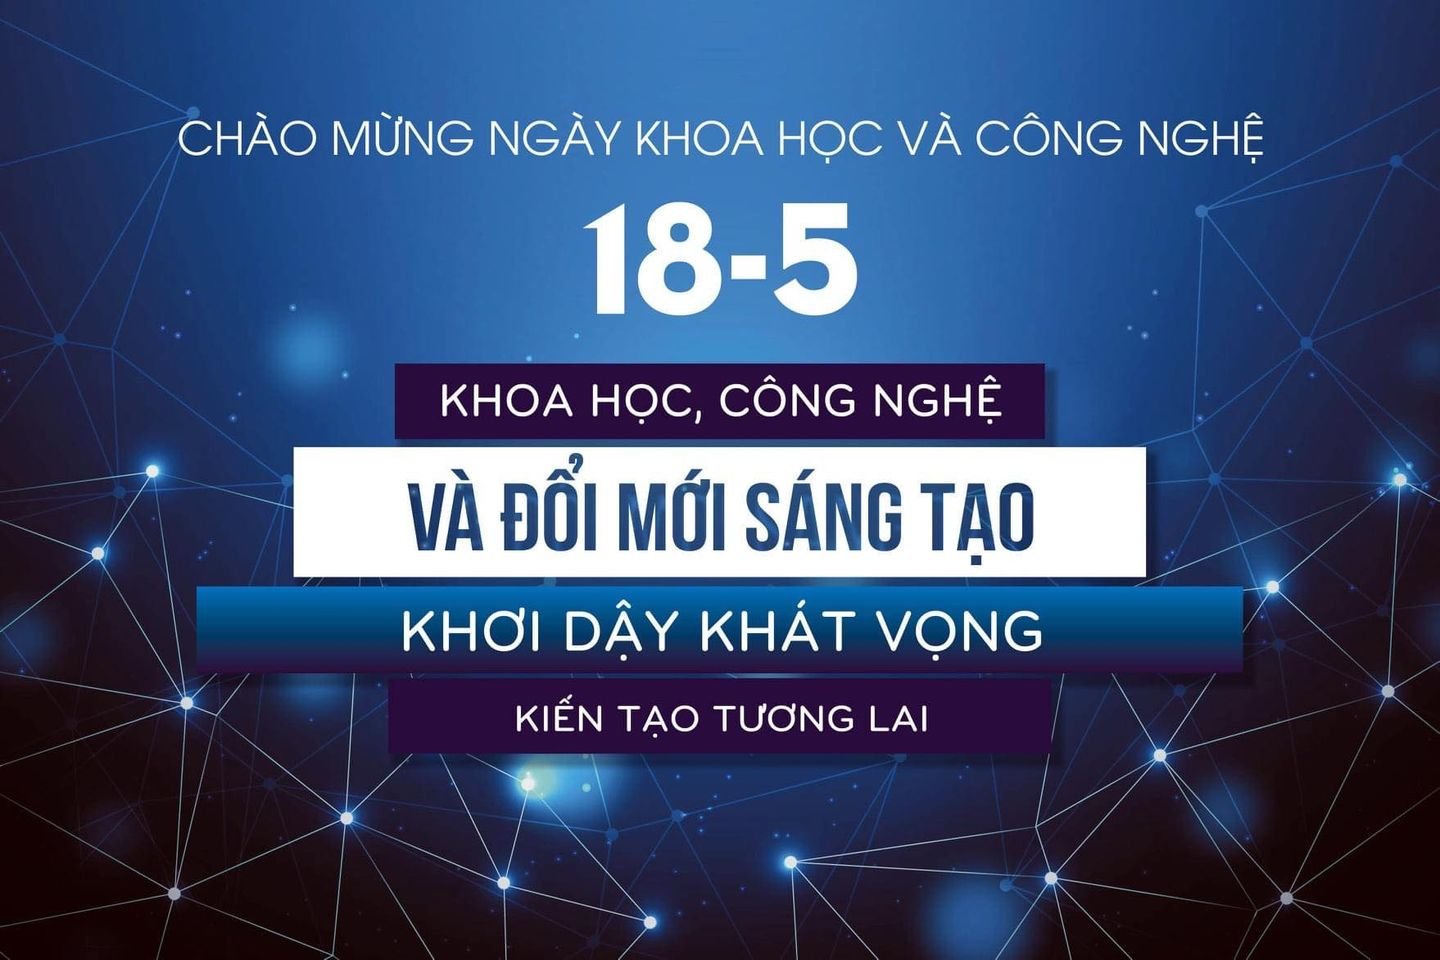 Chào mừng Ngày Khoa học và Công nghệ Việt Nam 2021: Đổi mới sáng tạo - Khơi dậy khát vọng, kiến tạo tương lai